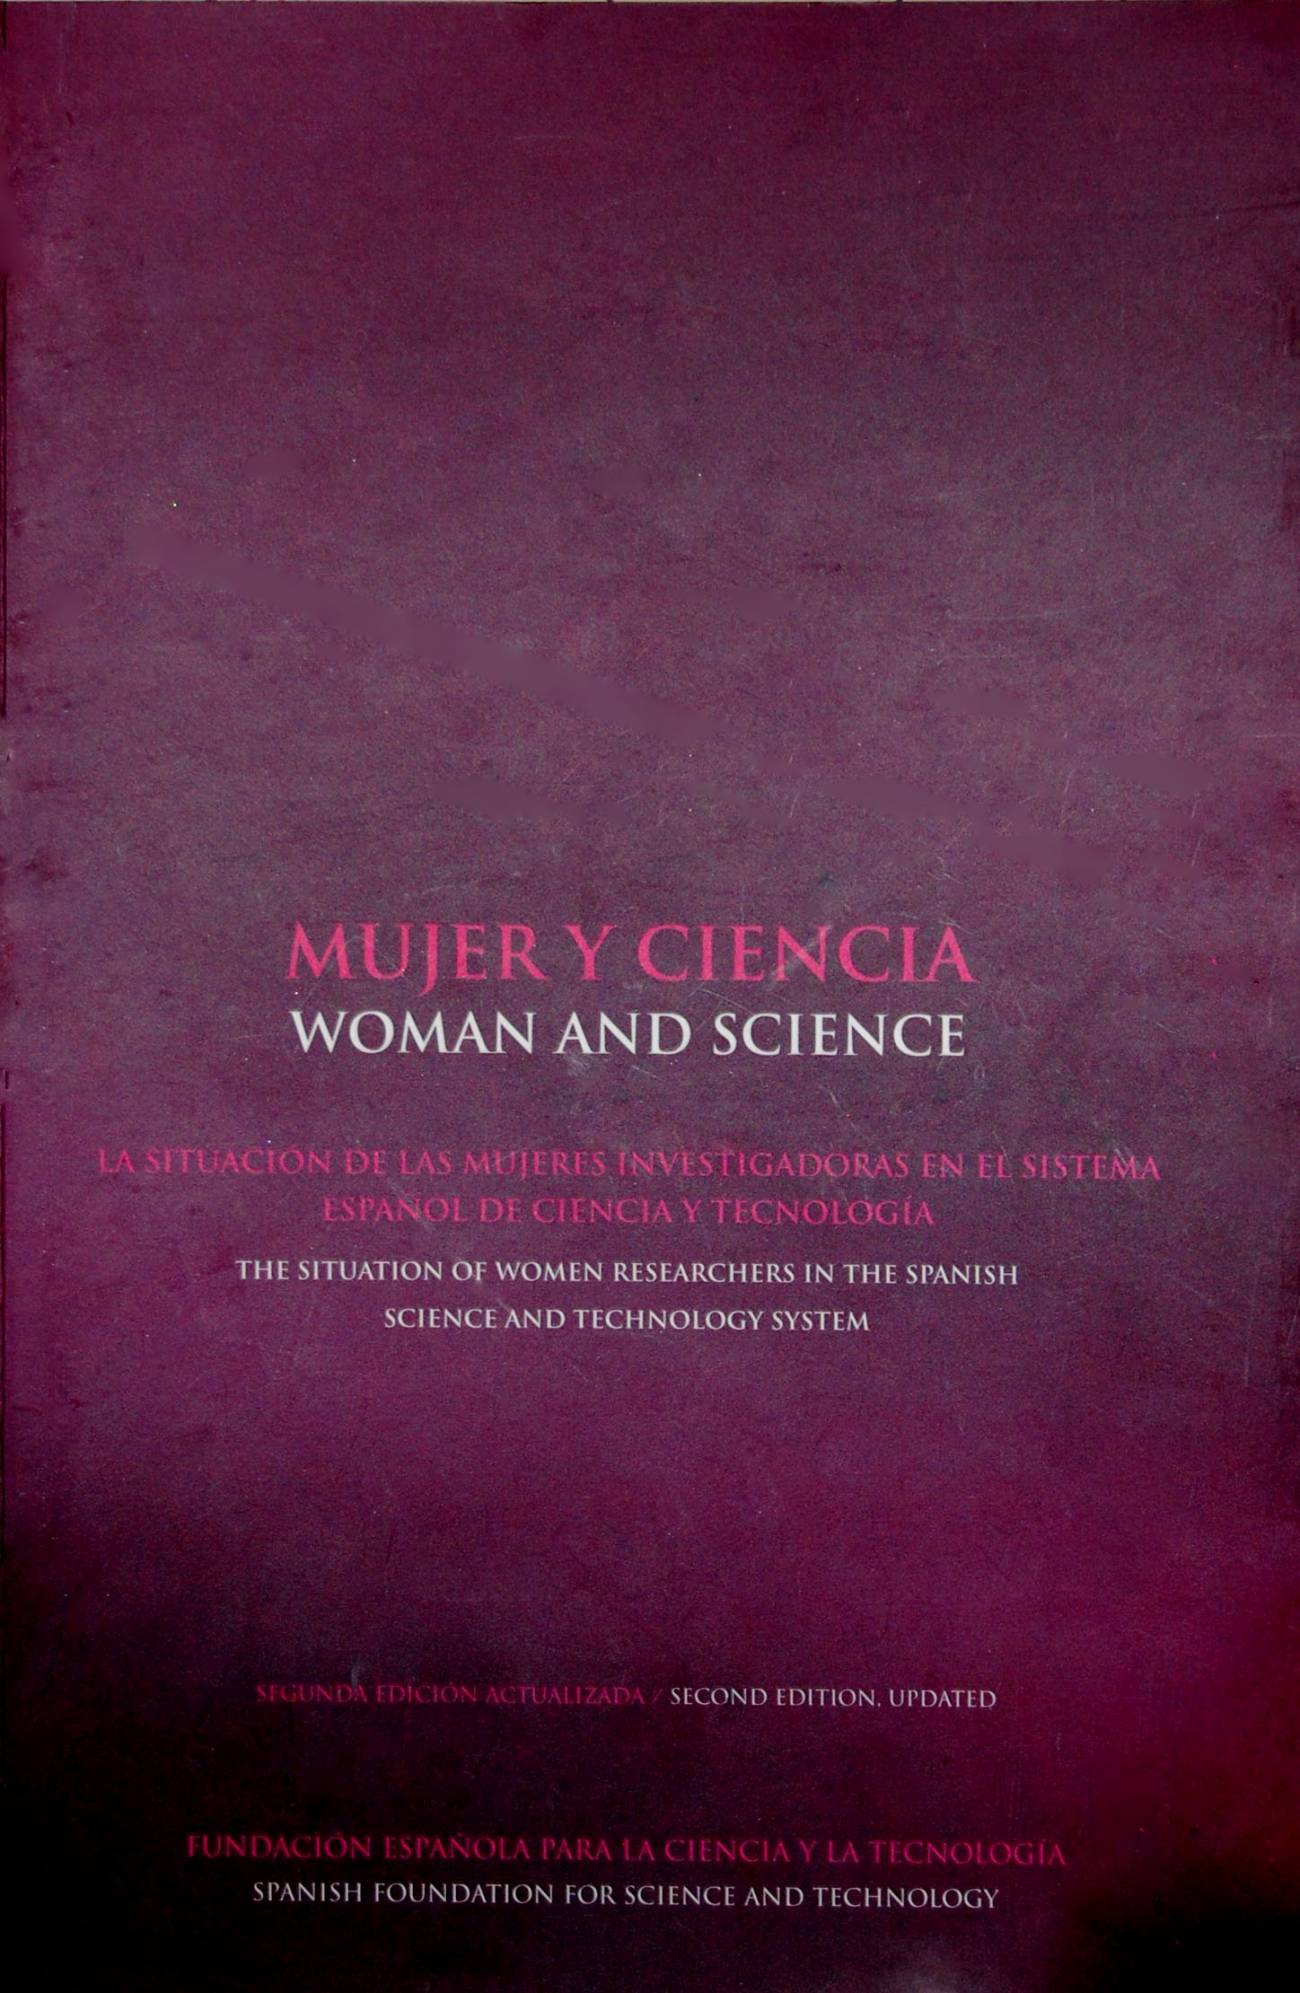 Libro 'Mujer y ciencia'